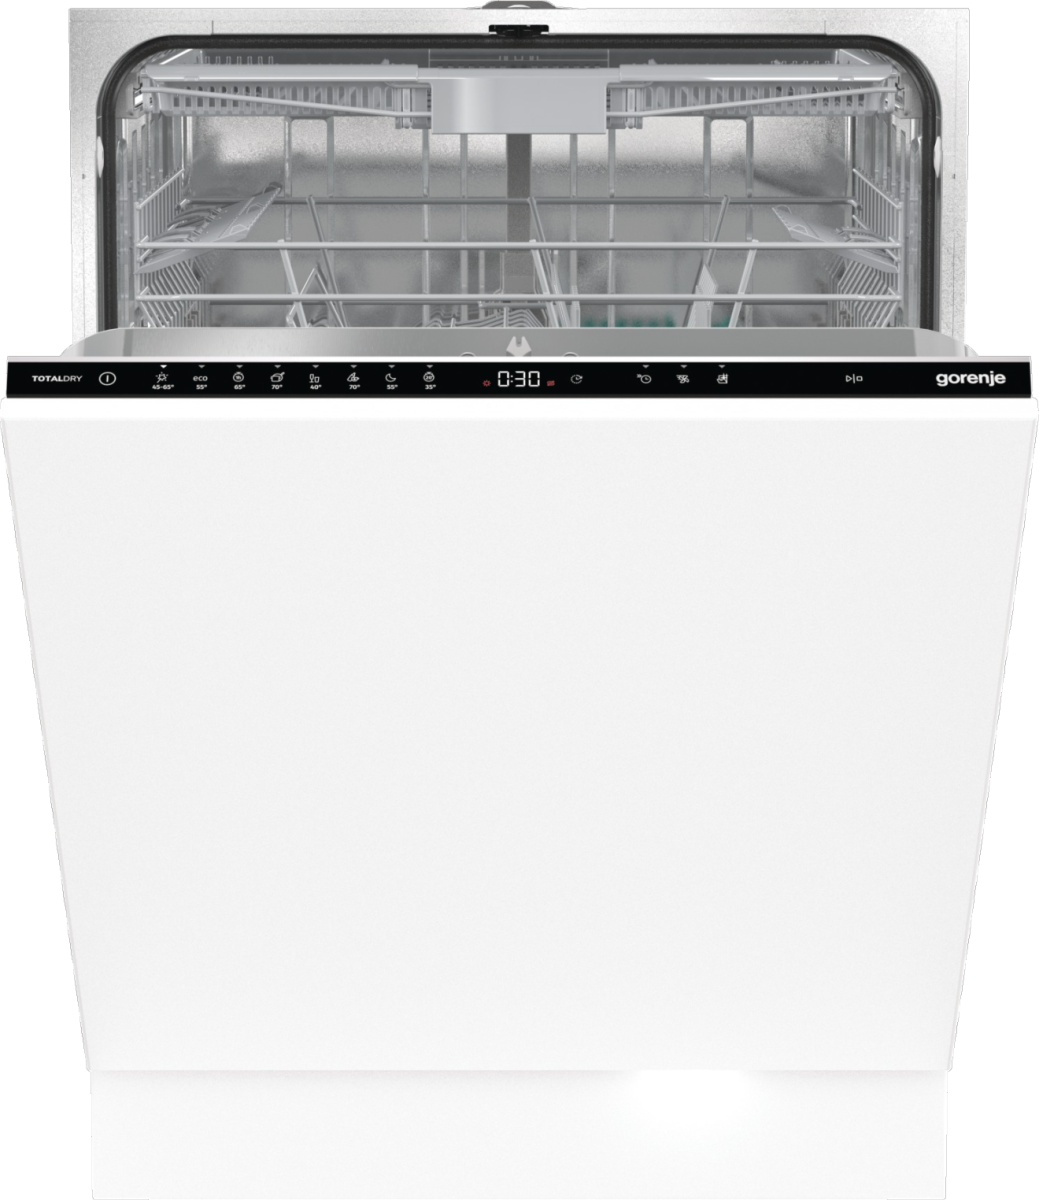 Встраиваемая посудомоечная машина Gorenje GV663D60 встраиваемая посудомоечная машина gorenje gv561d11